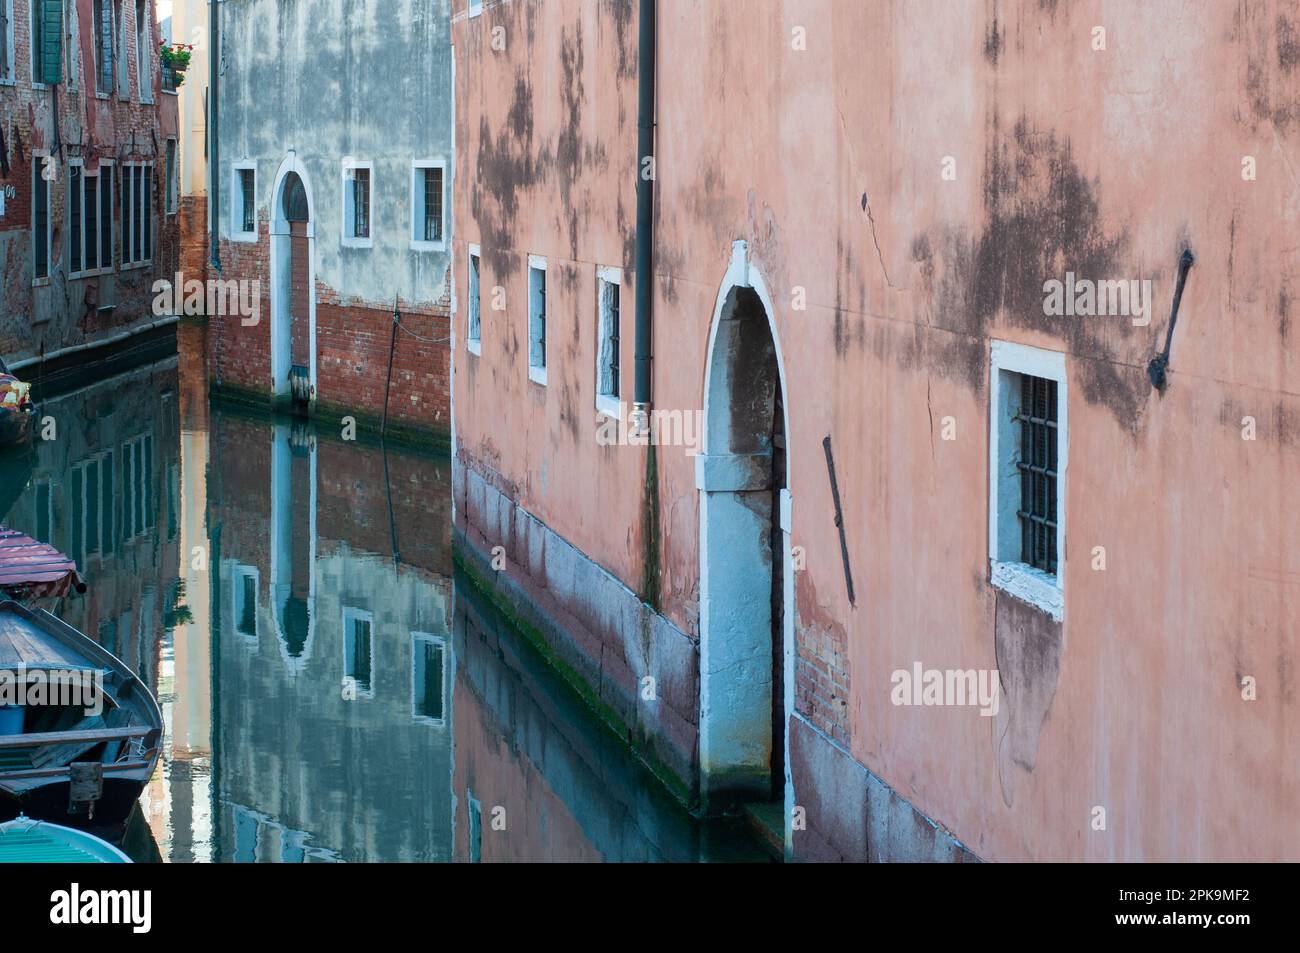 Canale stretto ed esterni architettonici, Venezia, Italia Foto Stock